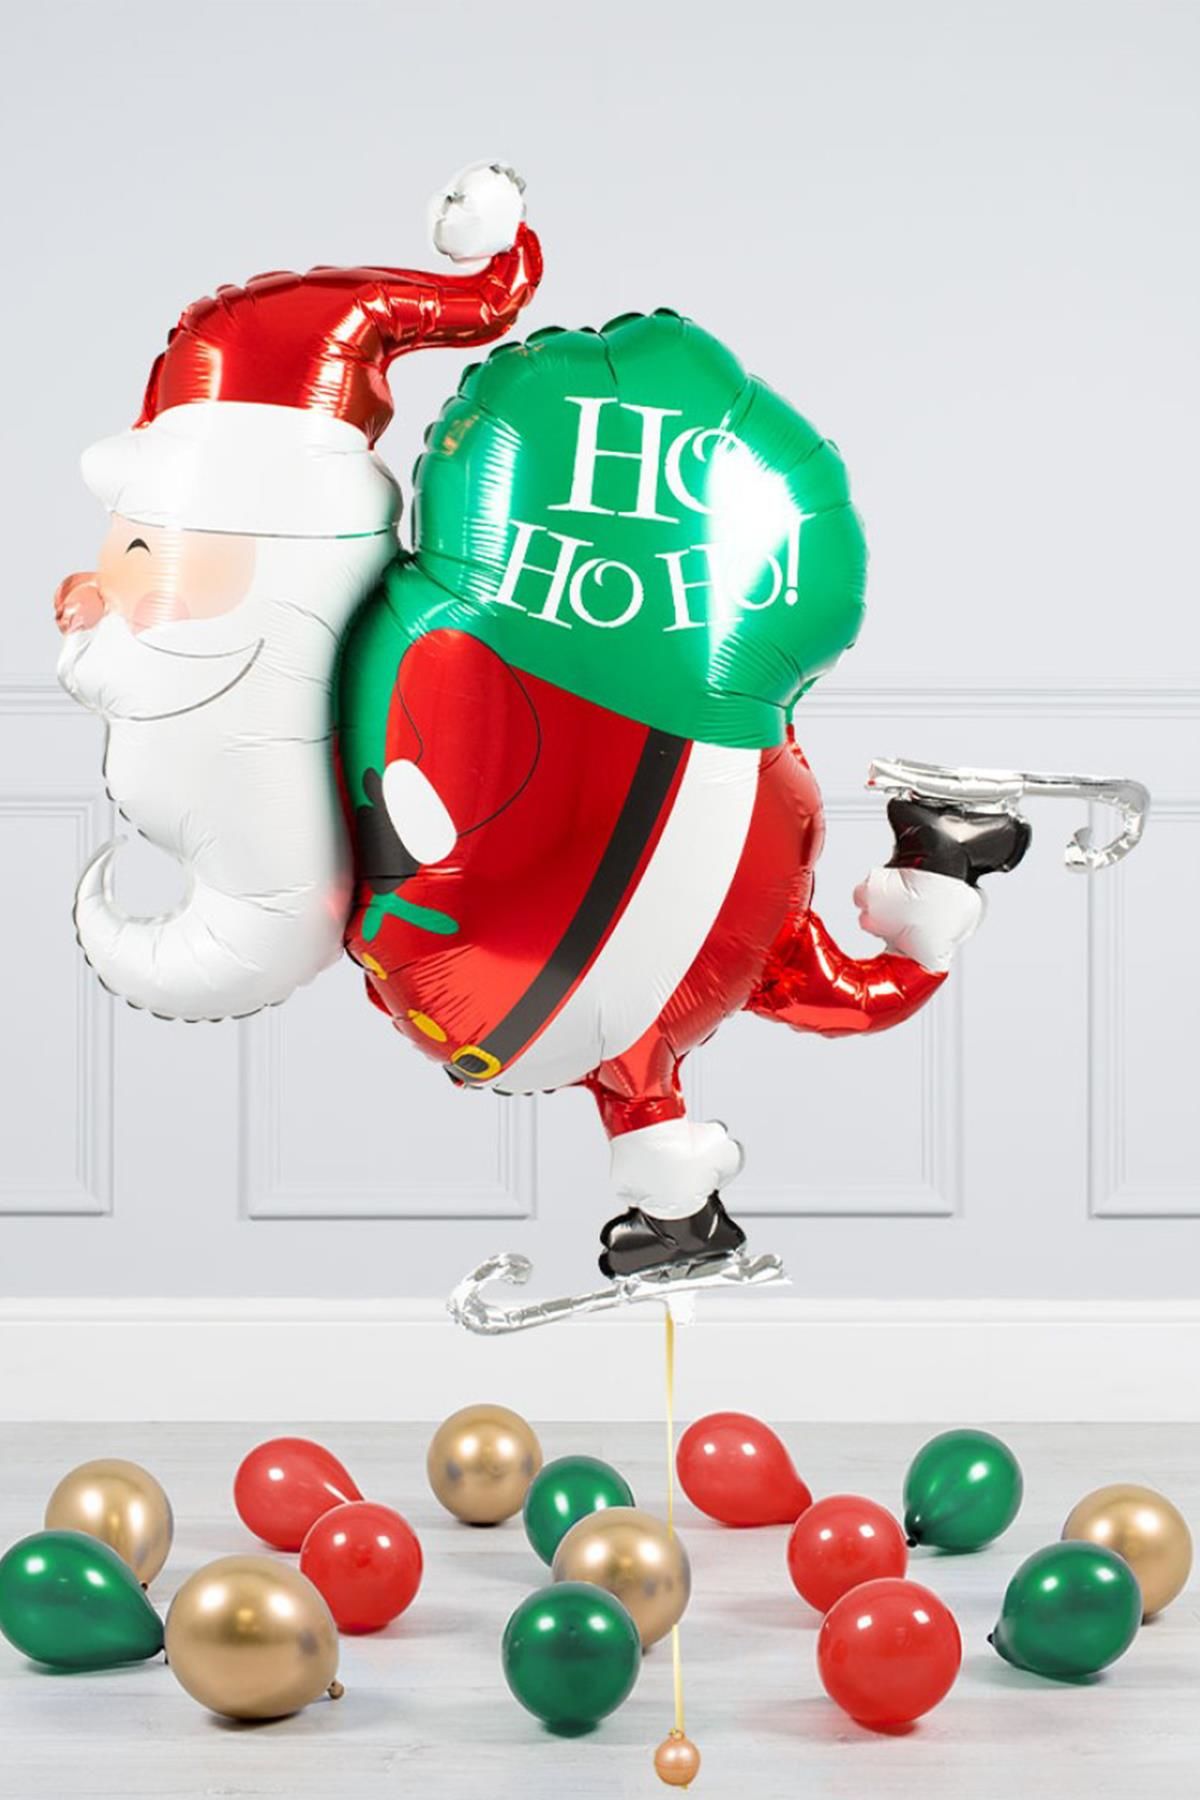 Noel Baba Balonu - Yılbaşı Süsleme Balonları Patenli Hediyeli Noel Baba Balonu